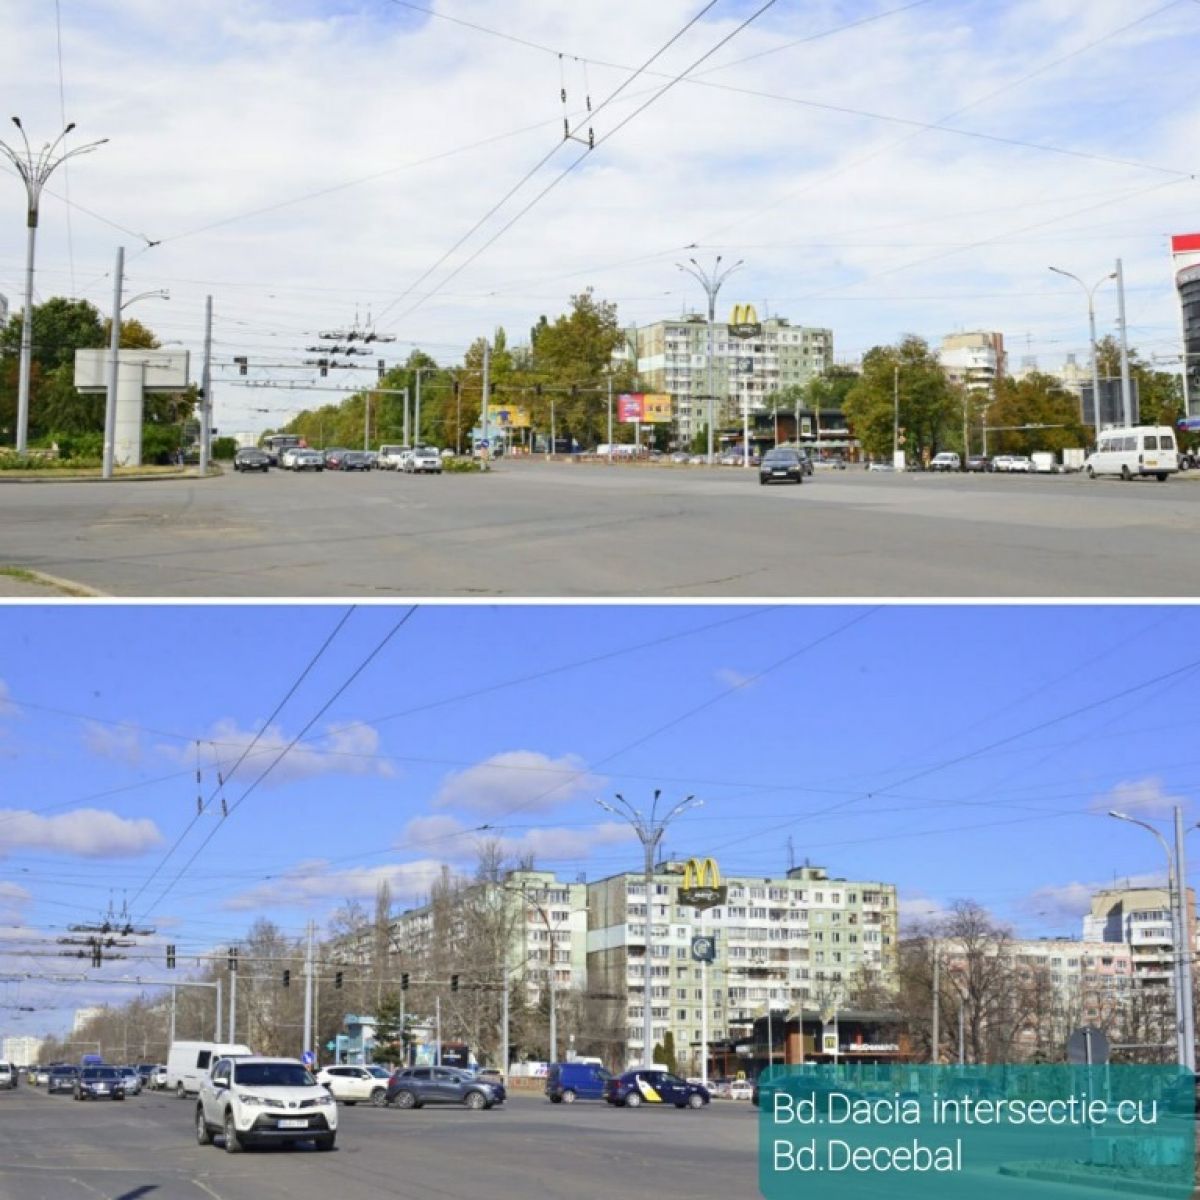 Înainte și după. Cum s-au schimbat străzile capitalei după demontarea panourilor publicitare (GALERIE FOTO)